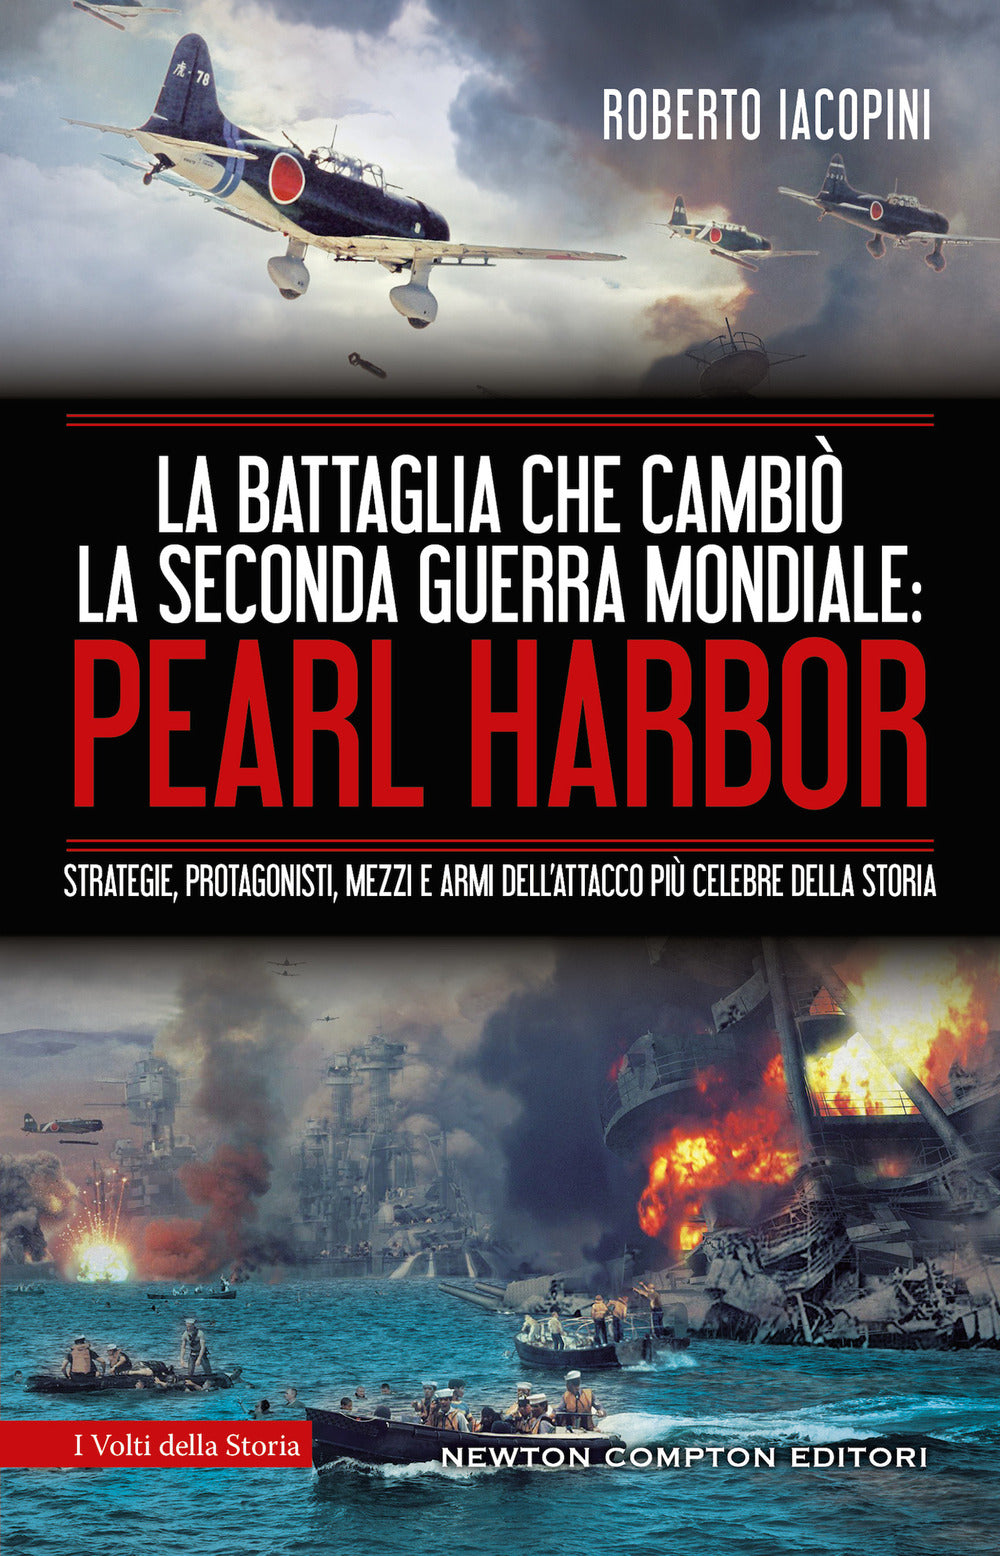 La battaglia che cambiò la seconda guerra mondiale: Pearl Harbor. Strategie, protagonisti, mezzi e armi dell'attacco più celebre della storia.